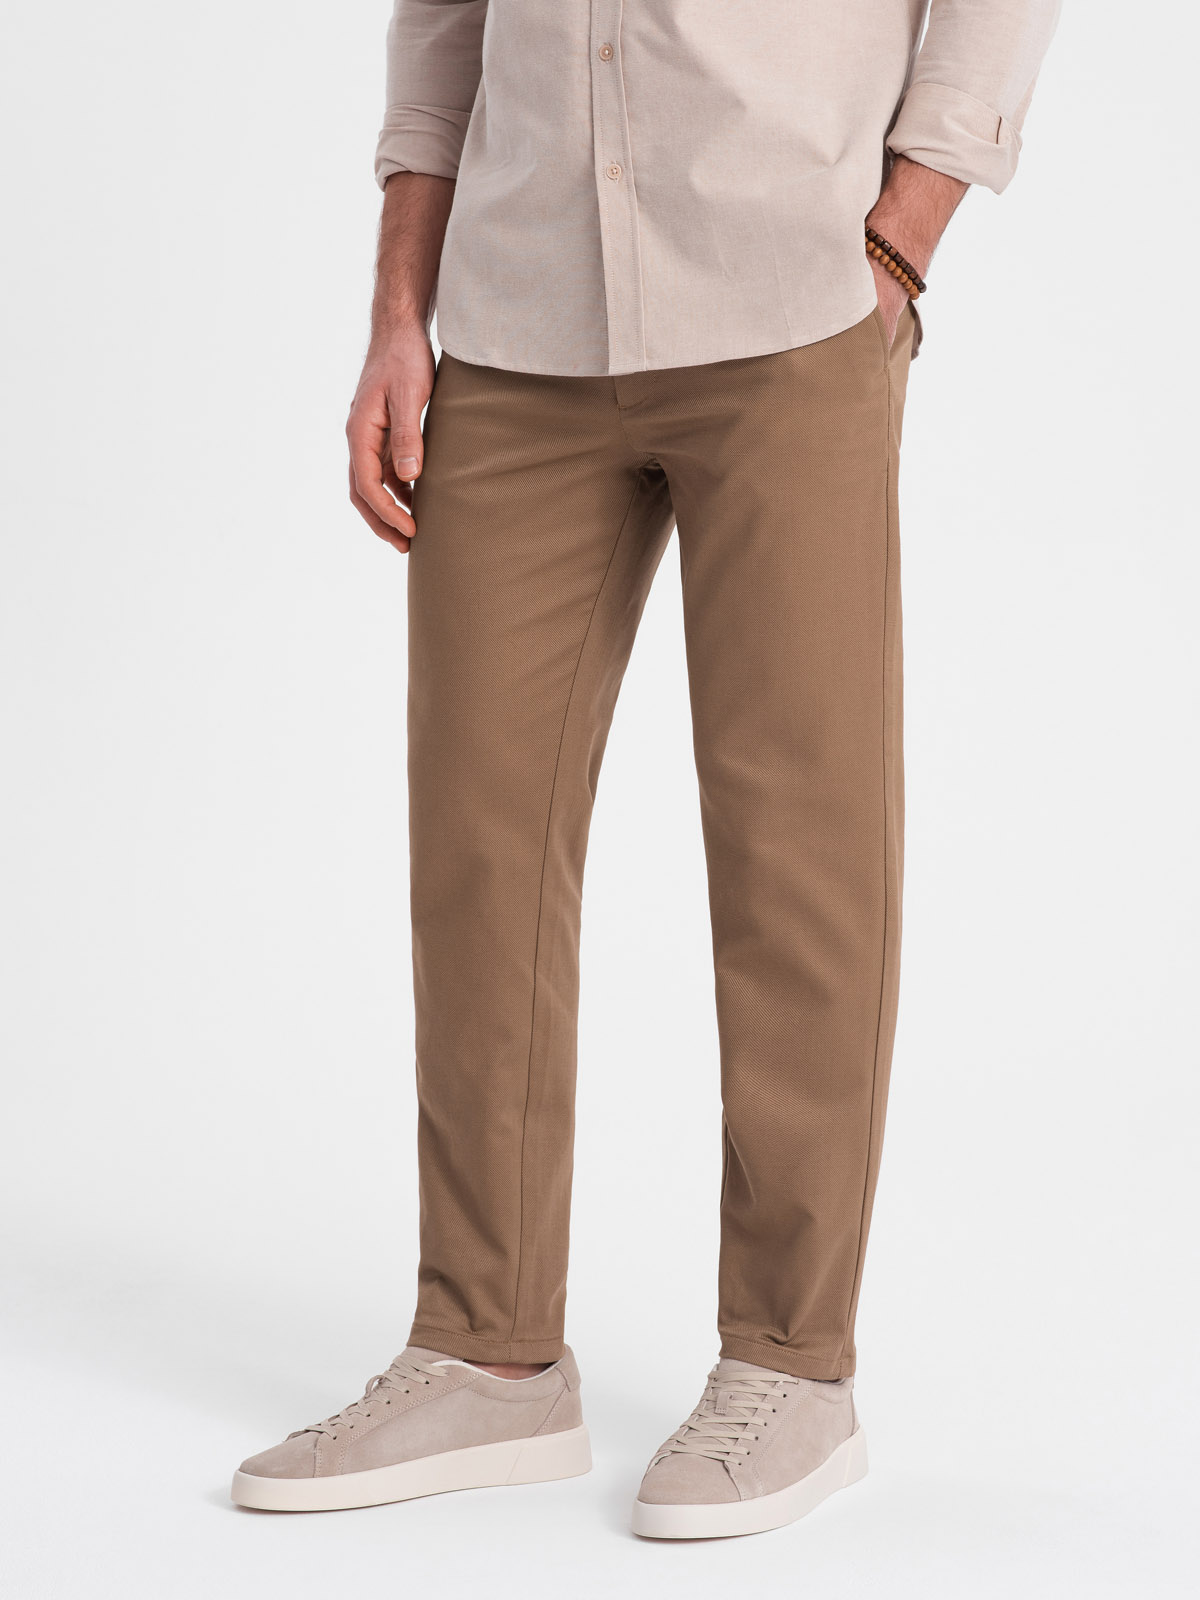 Spodnie męskie chino o klasycznym kroju z delikatna teksturą - brązowe V2 OM-PACP-0190